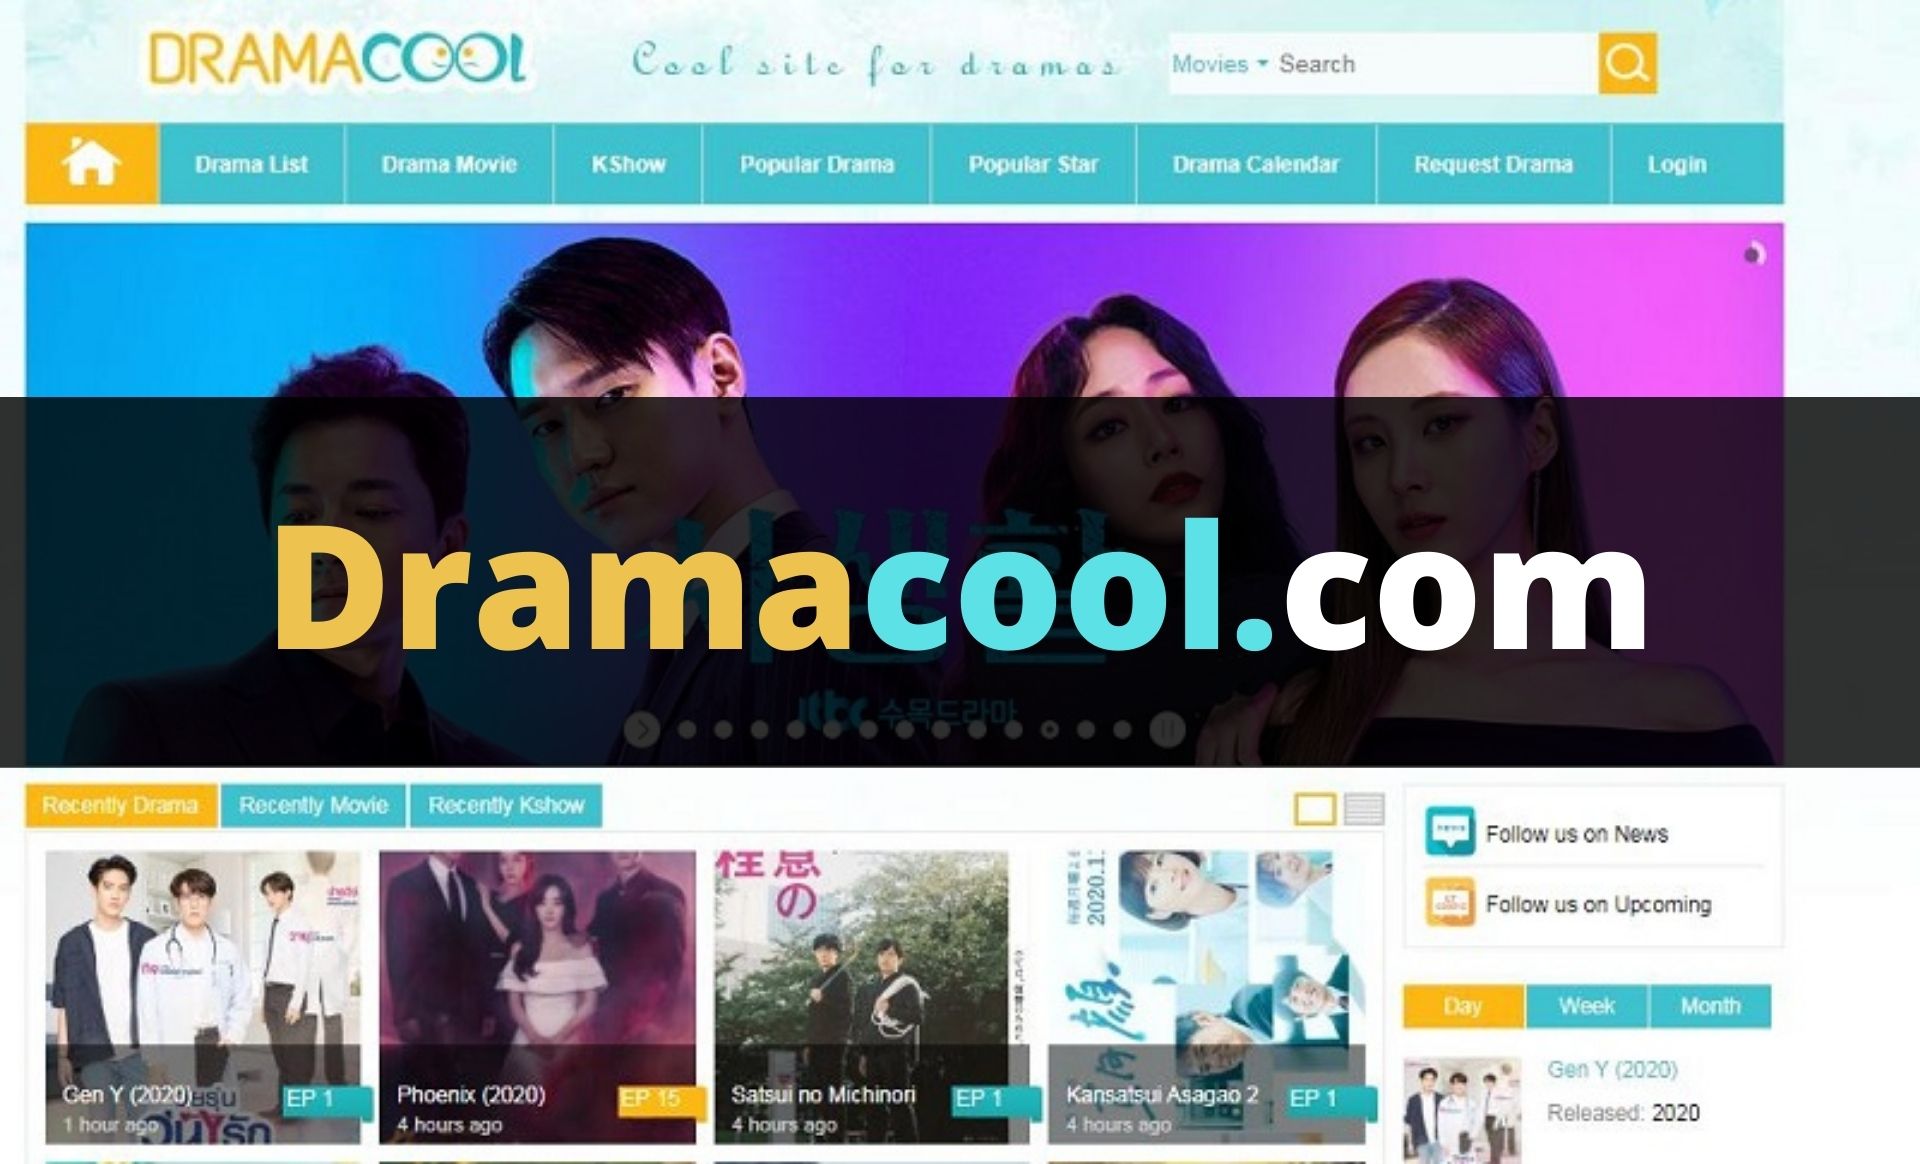 Dramacool app